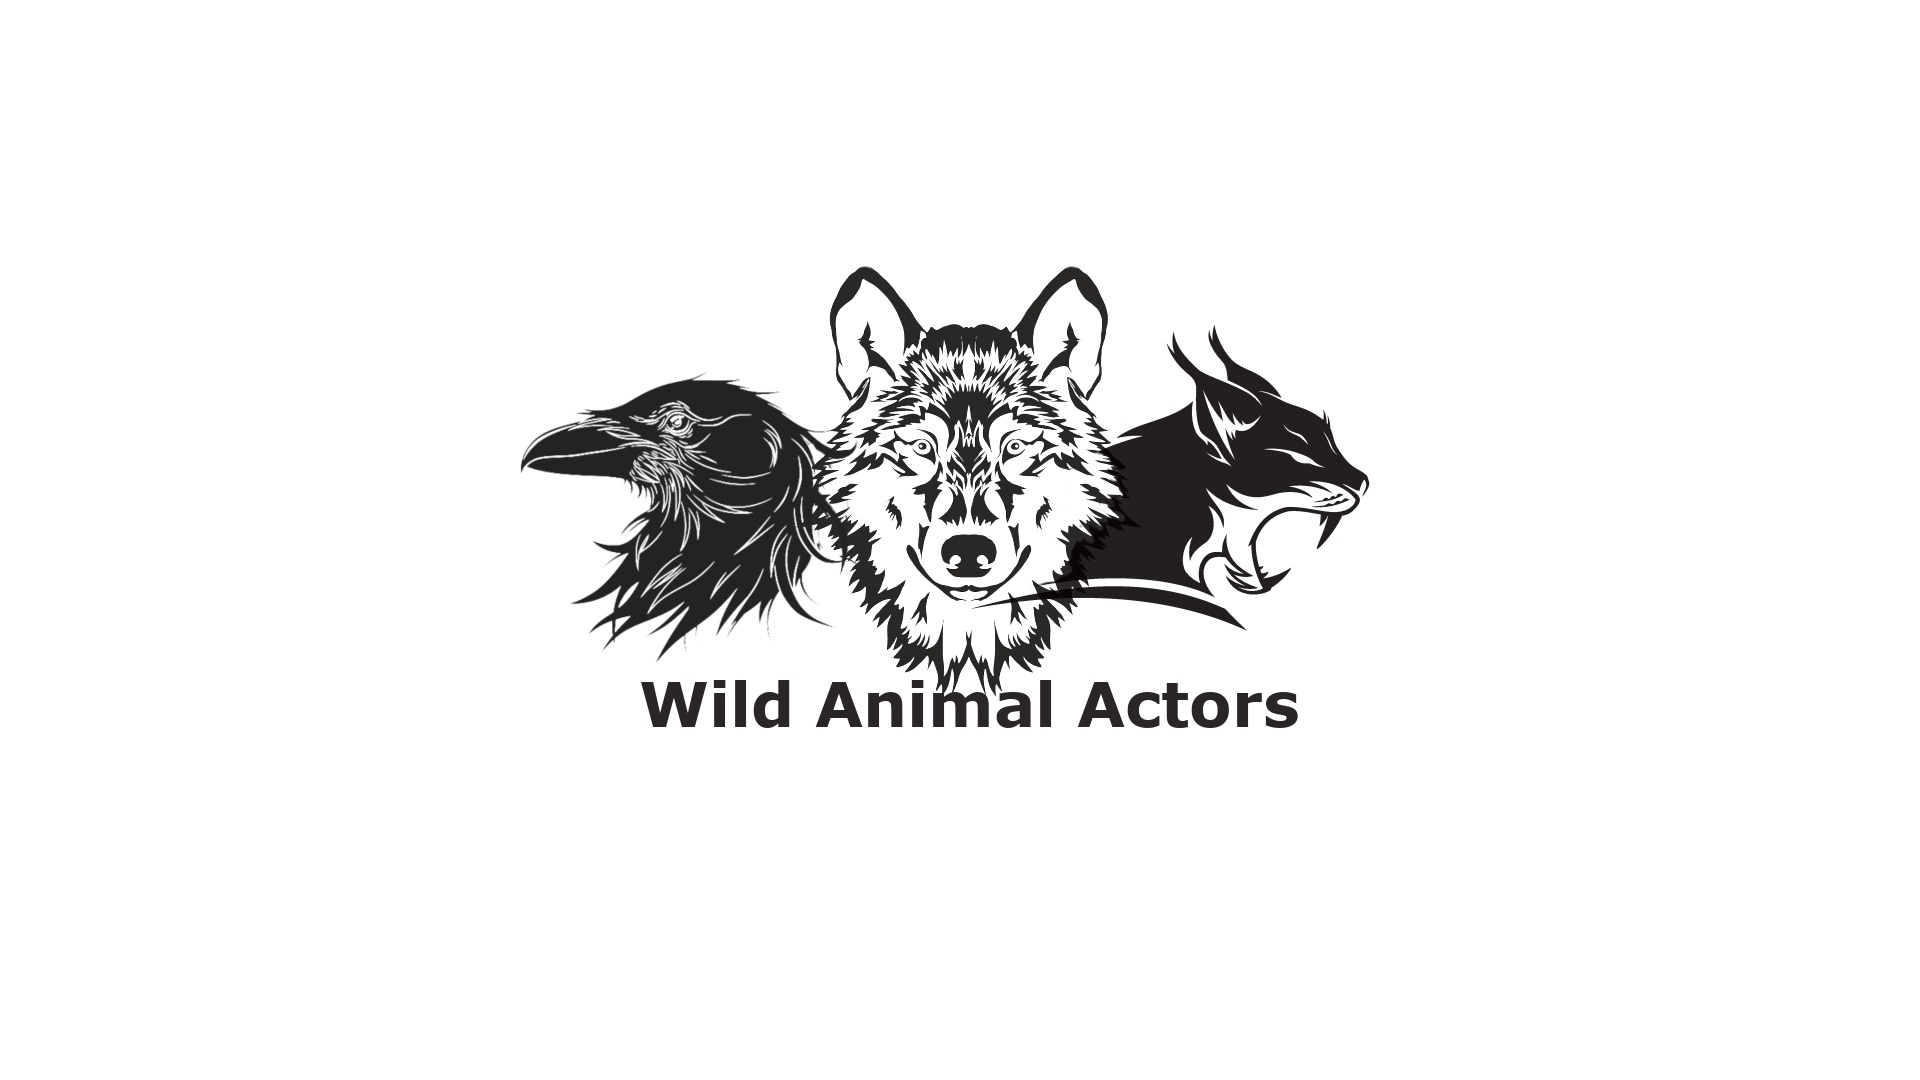 Wild Animal Actors